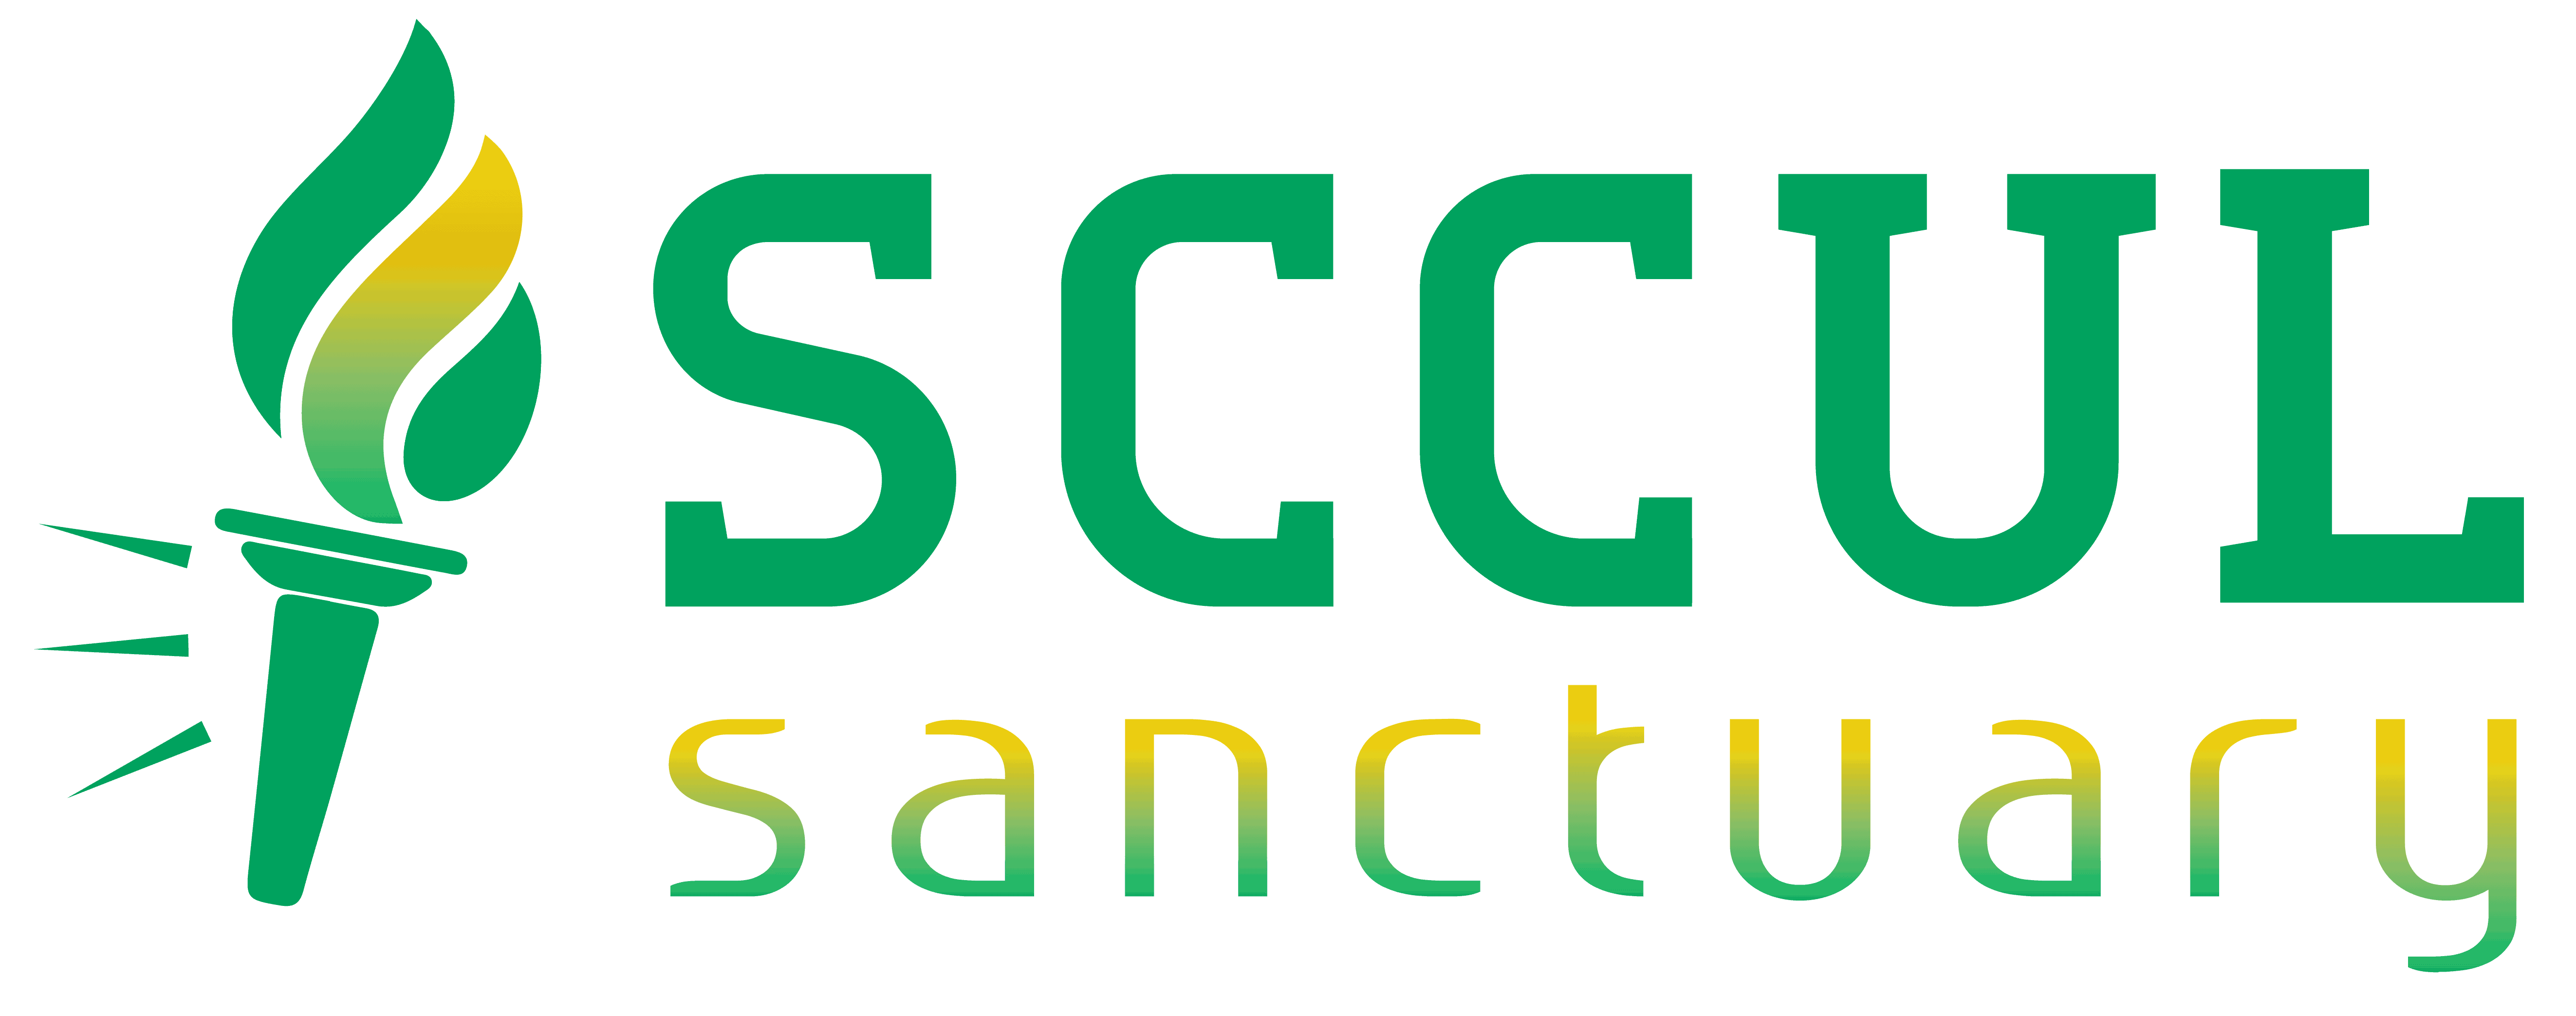 Sccul Sanctuary